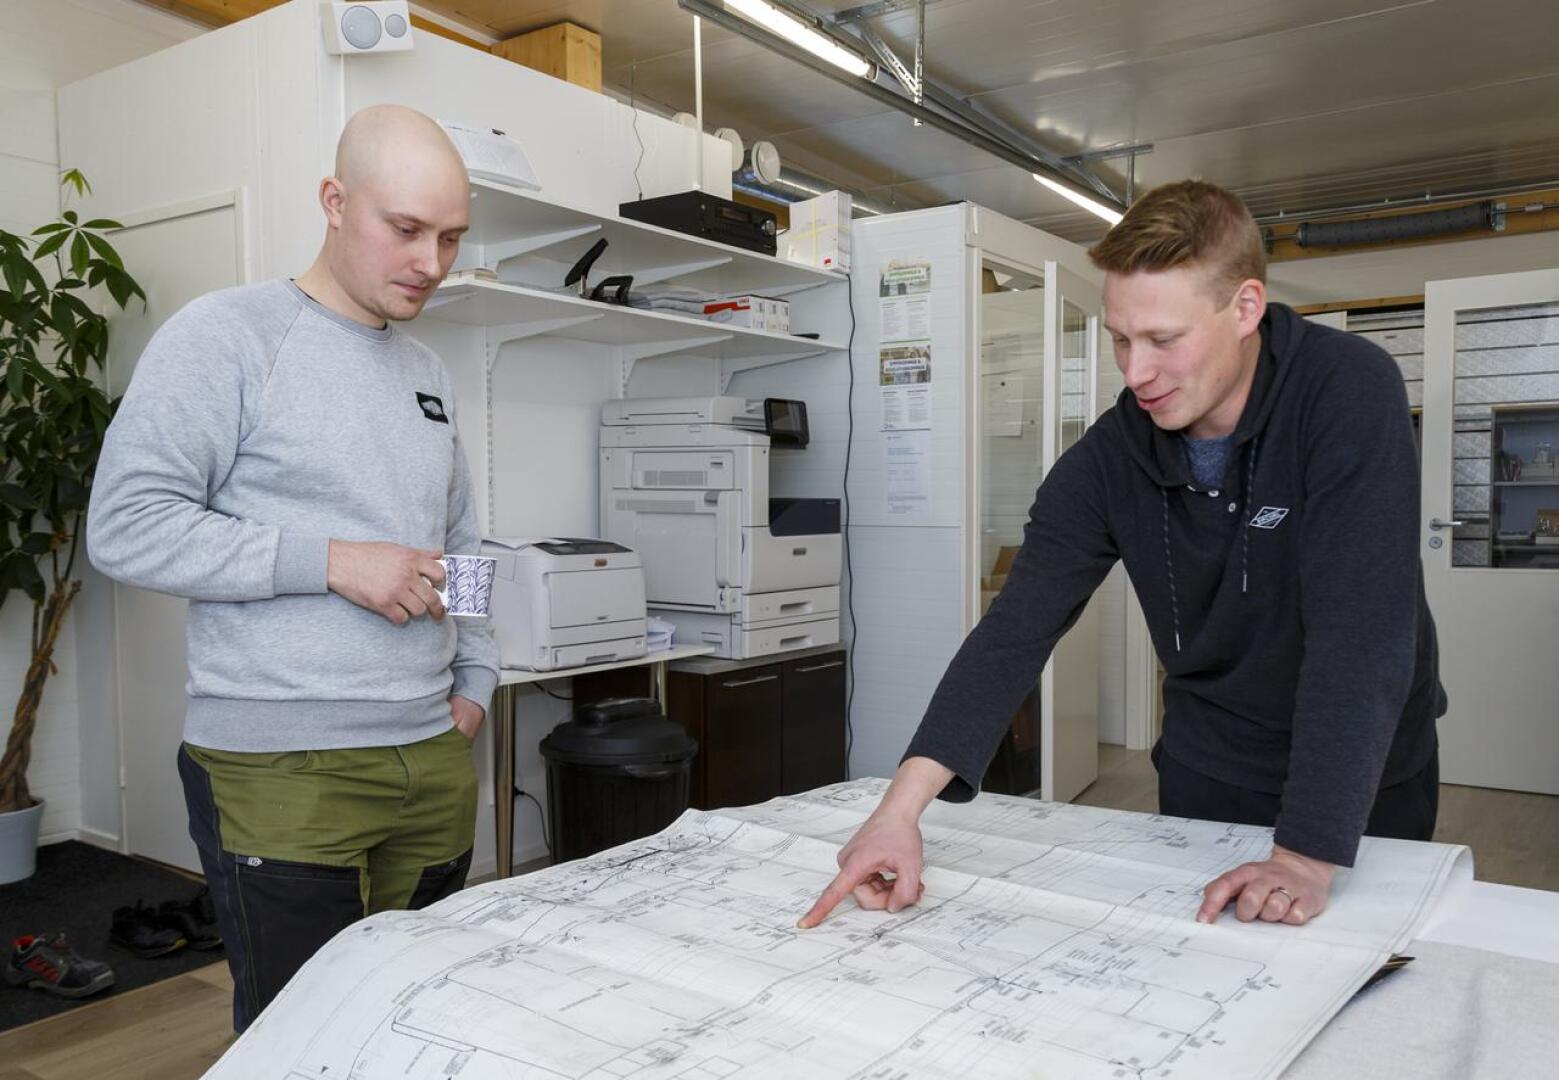 Tevi Systemsin Tero Turvasella ja Jose Juolalla perjantai oli toimistopäivä, kun taas kolmas yrittäjä Ville Vainio oli menossa koulutuksessa.